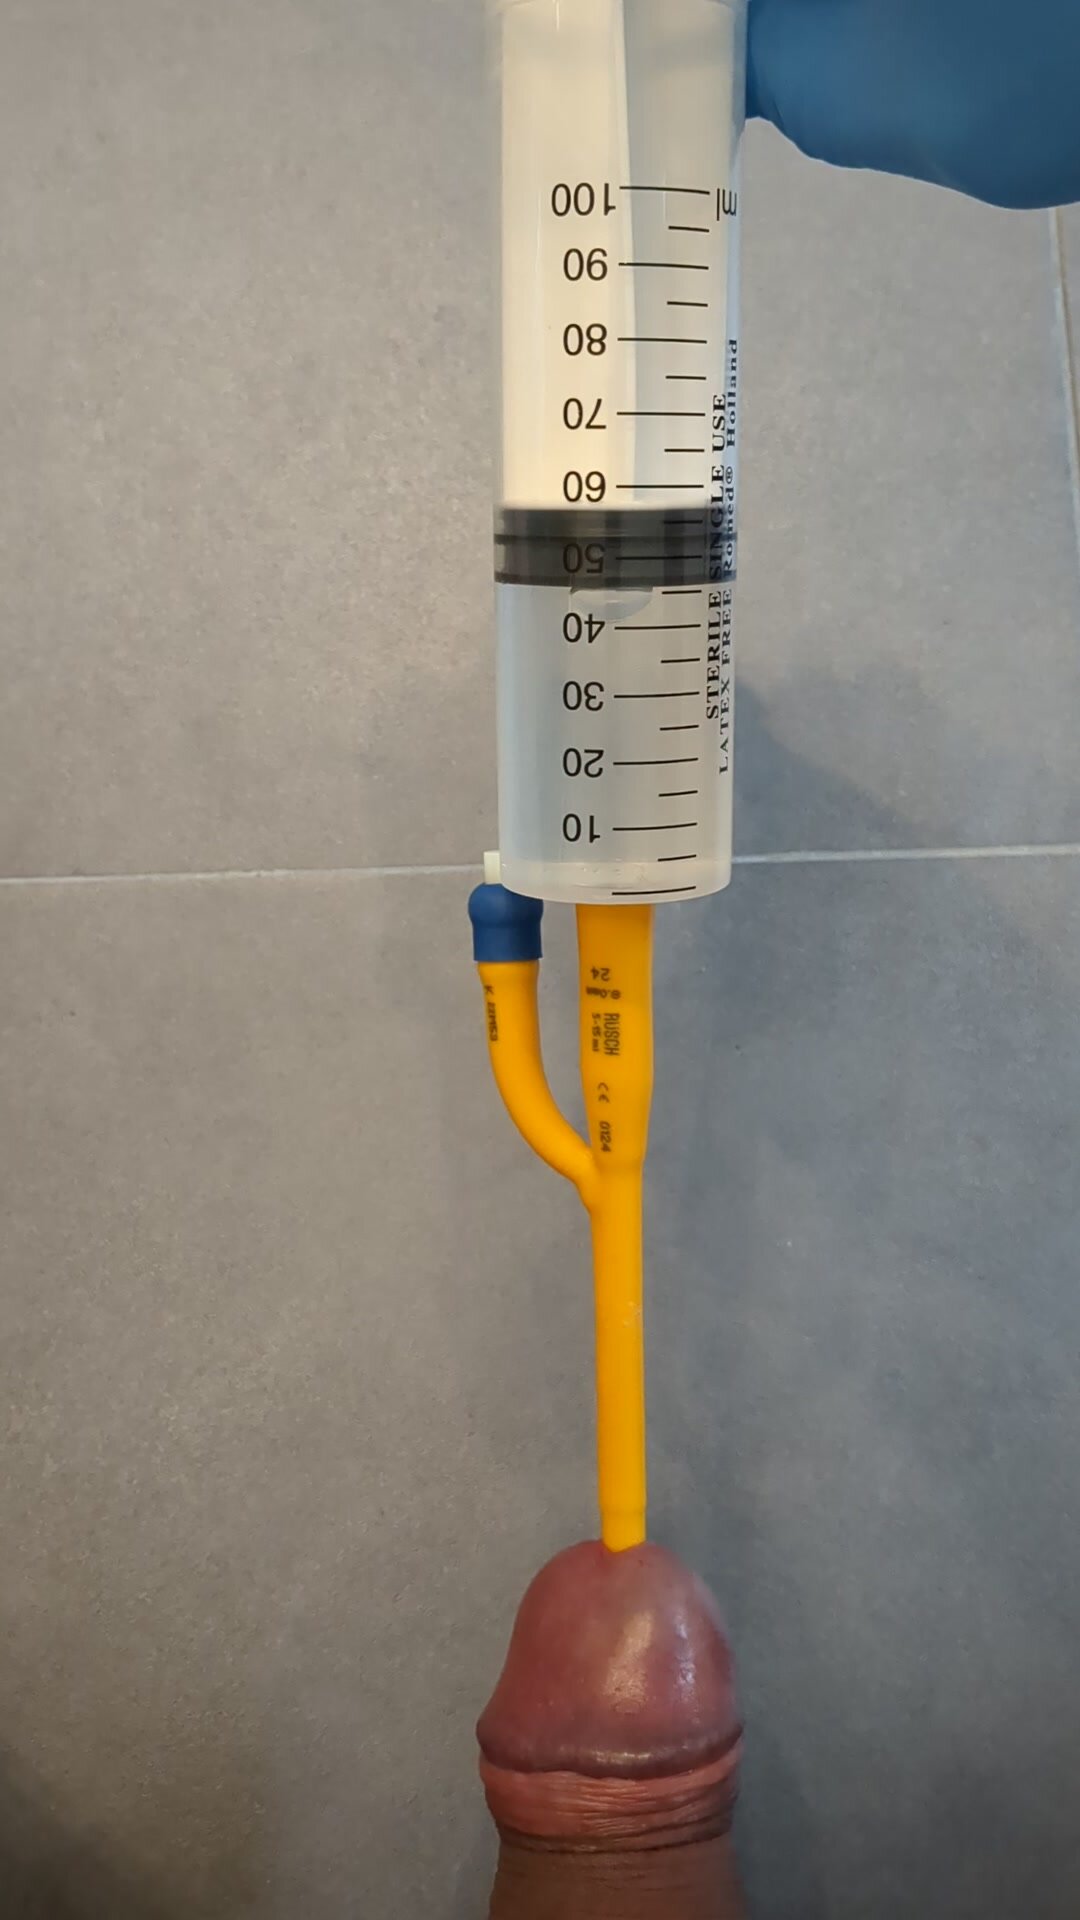 Bladder filling (CH 24 catheter)